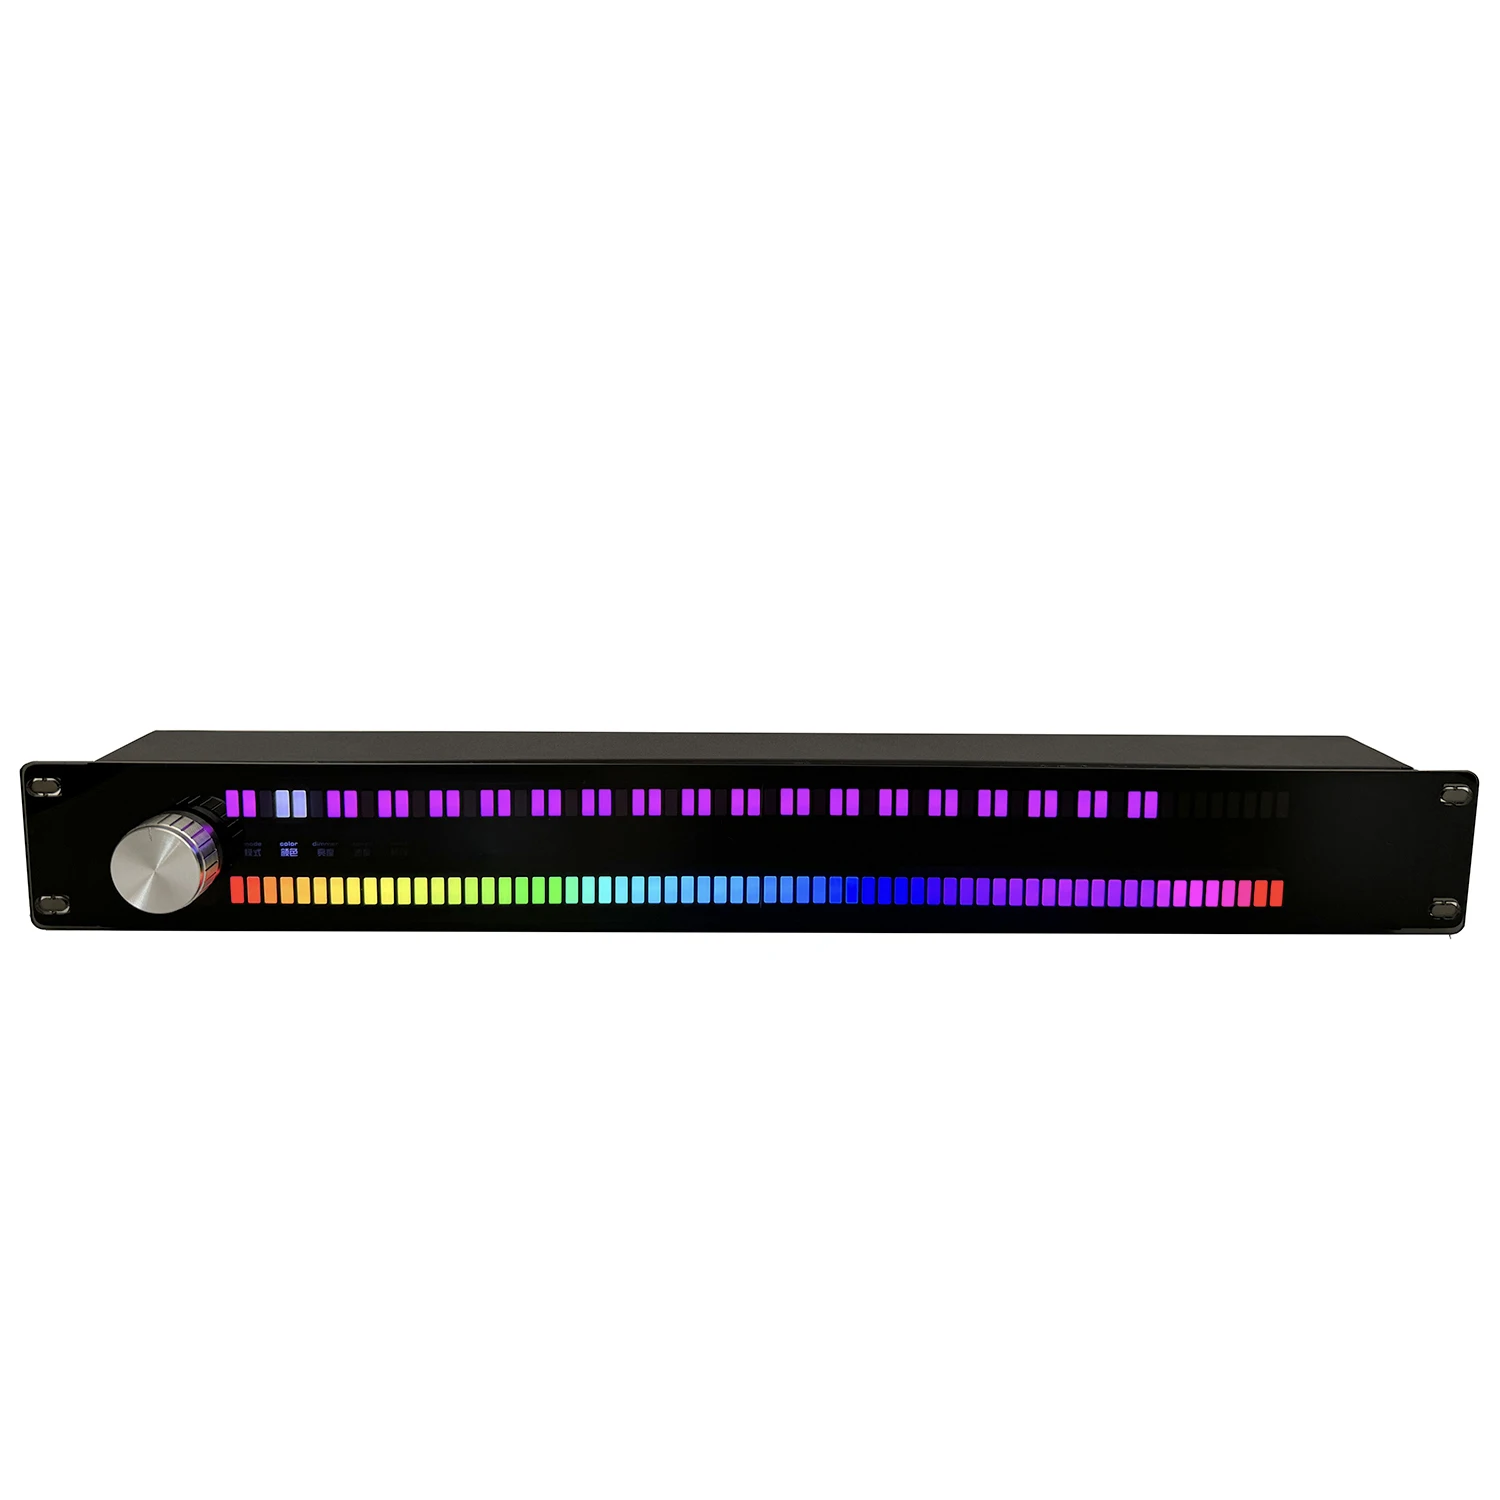 Индикатор уровня музыки 128 полноцветных светодиодов дисплей музыкального спектра индикатор музыкальной атмосферы световой индикатор музыки голосовое управление Изображение 3